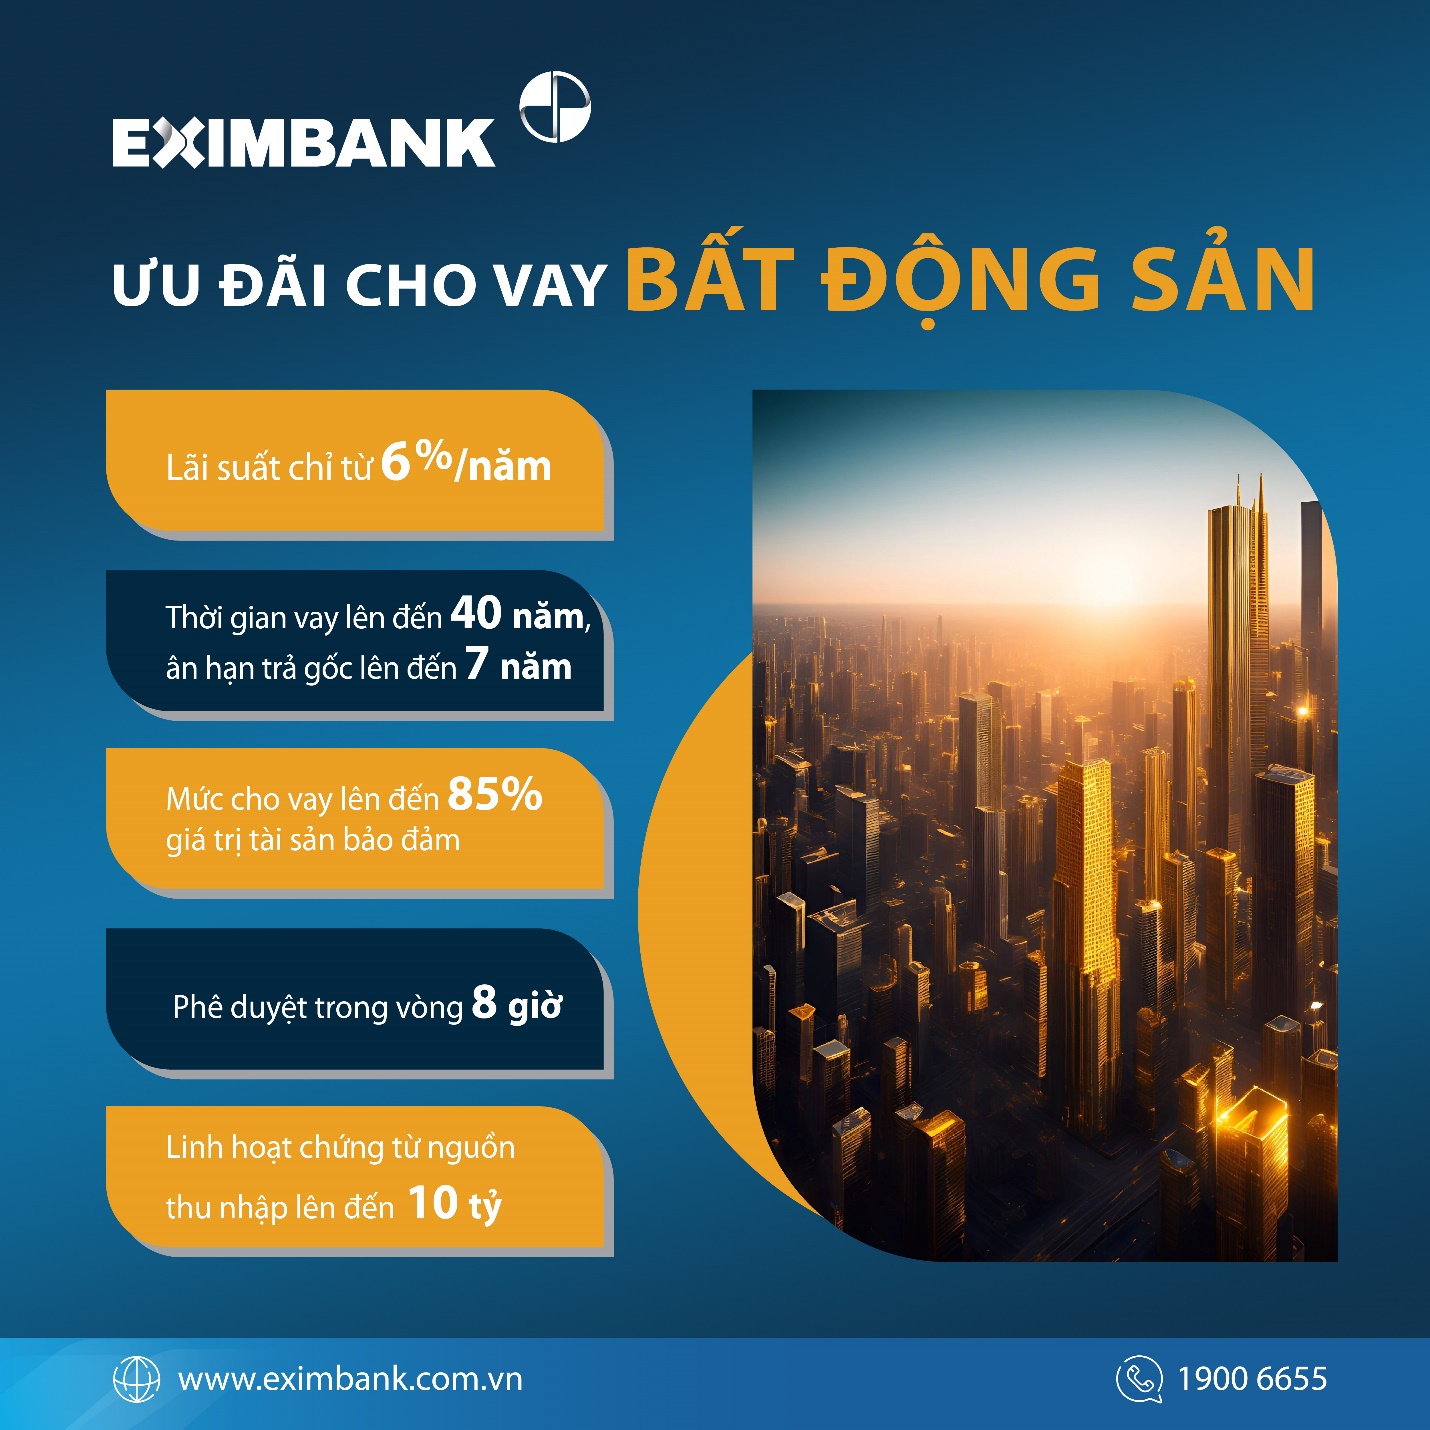 Eximbank “mạnh tay” hỗ trợ gói vay bất động sản hấp dẫn- Ảnh 1.